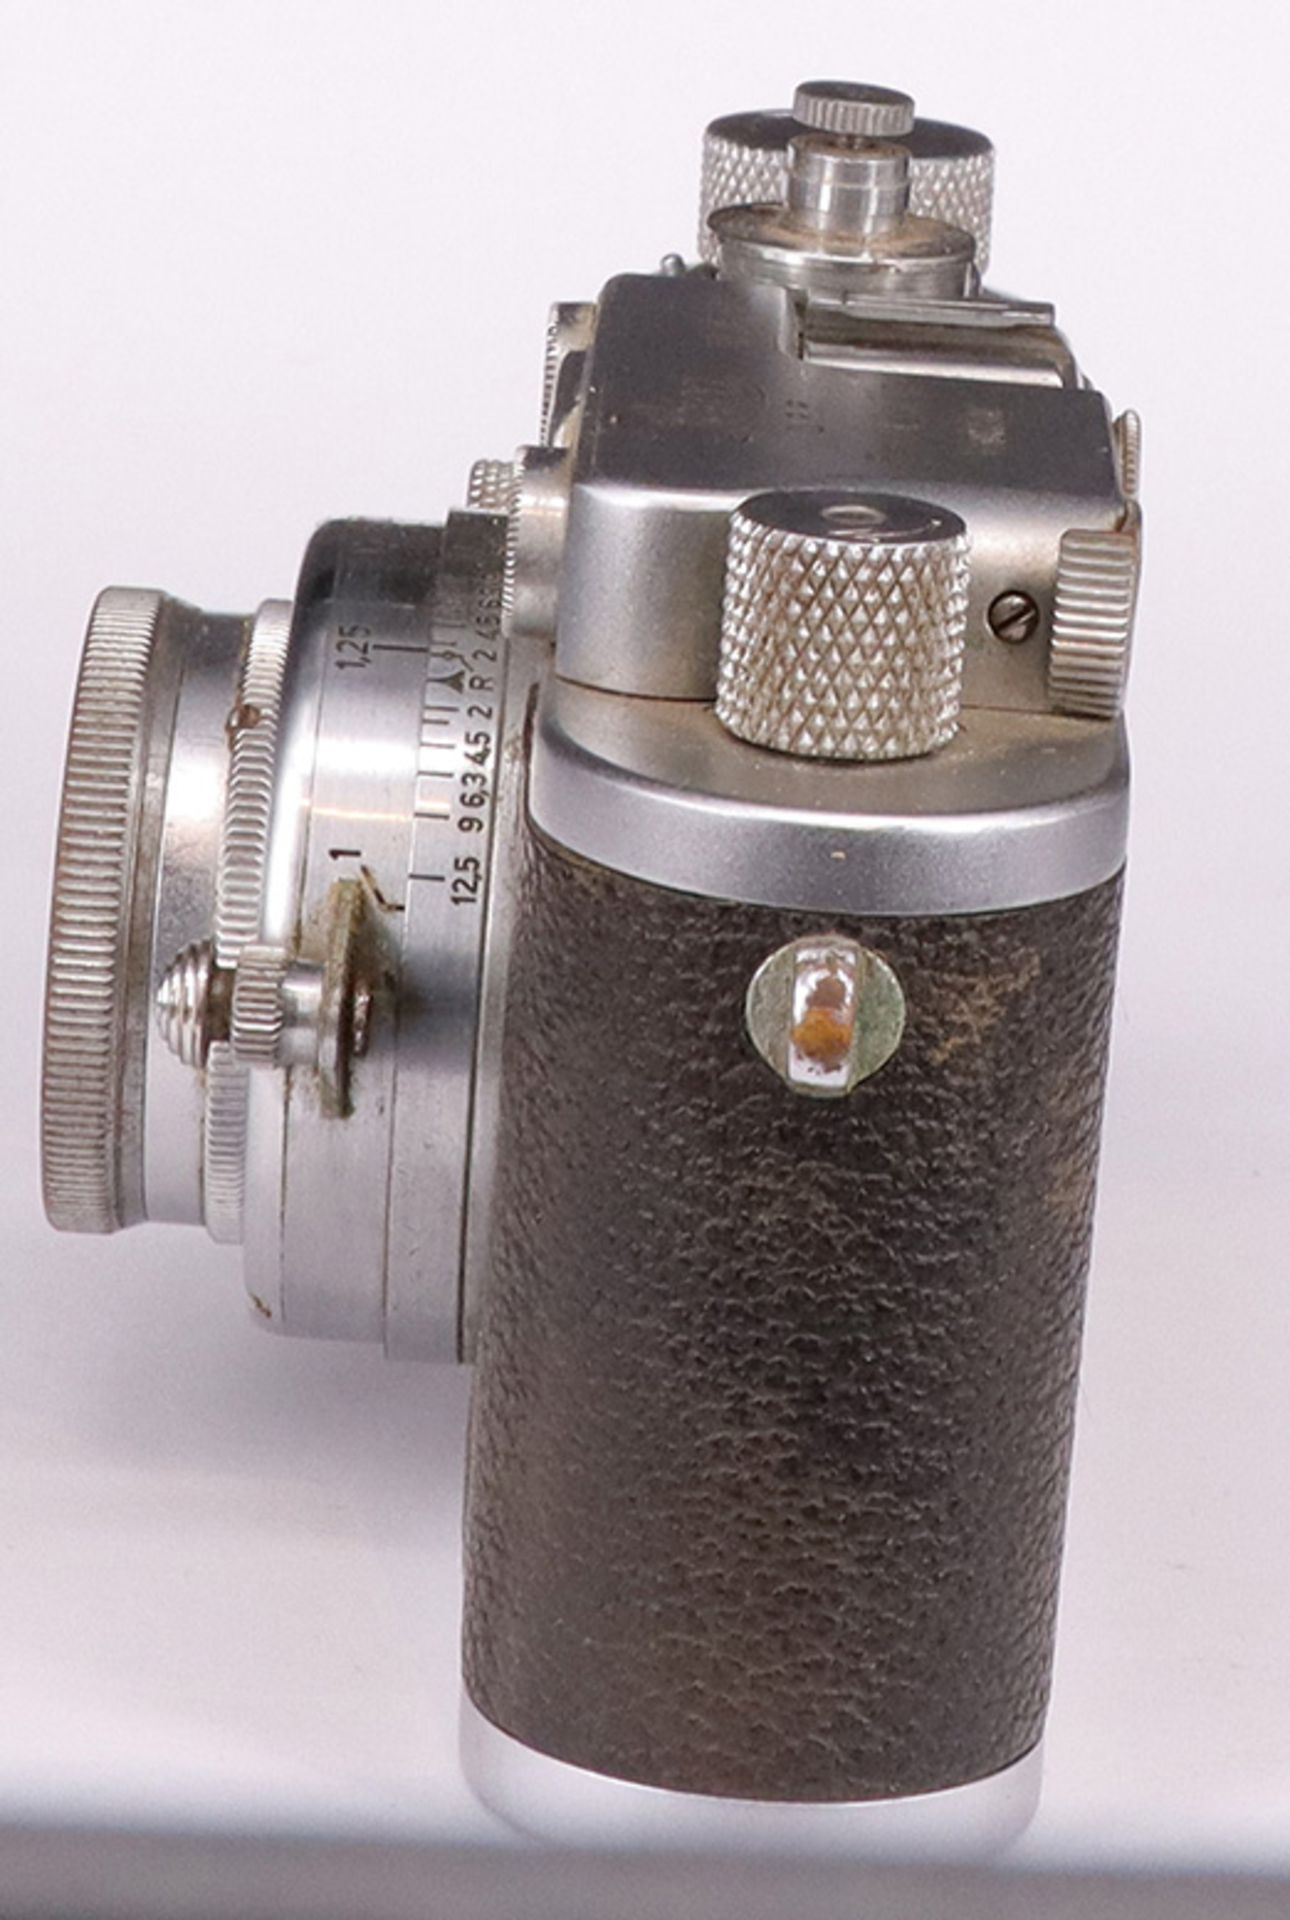 Leica, D.R.P. Ernst Leitz, Wetzlar, Kamera Nr. 261592, Objektiv f=5 cm 1:2, No 405024, Zustand: - Image 5 of 6